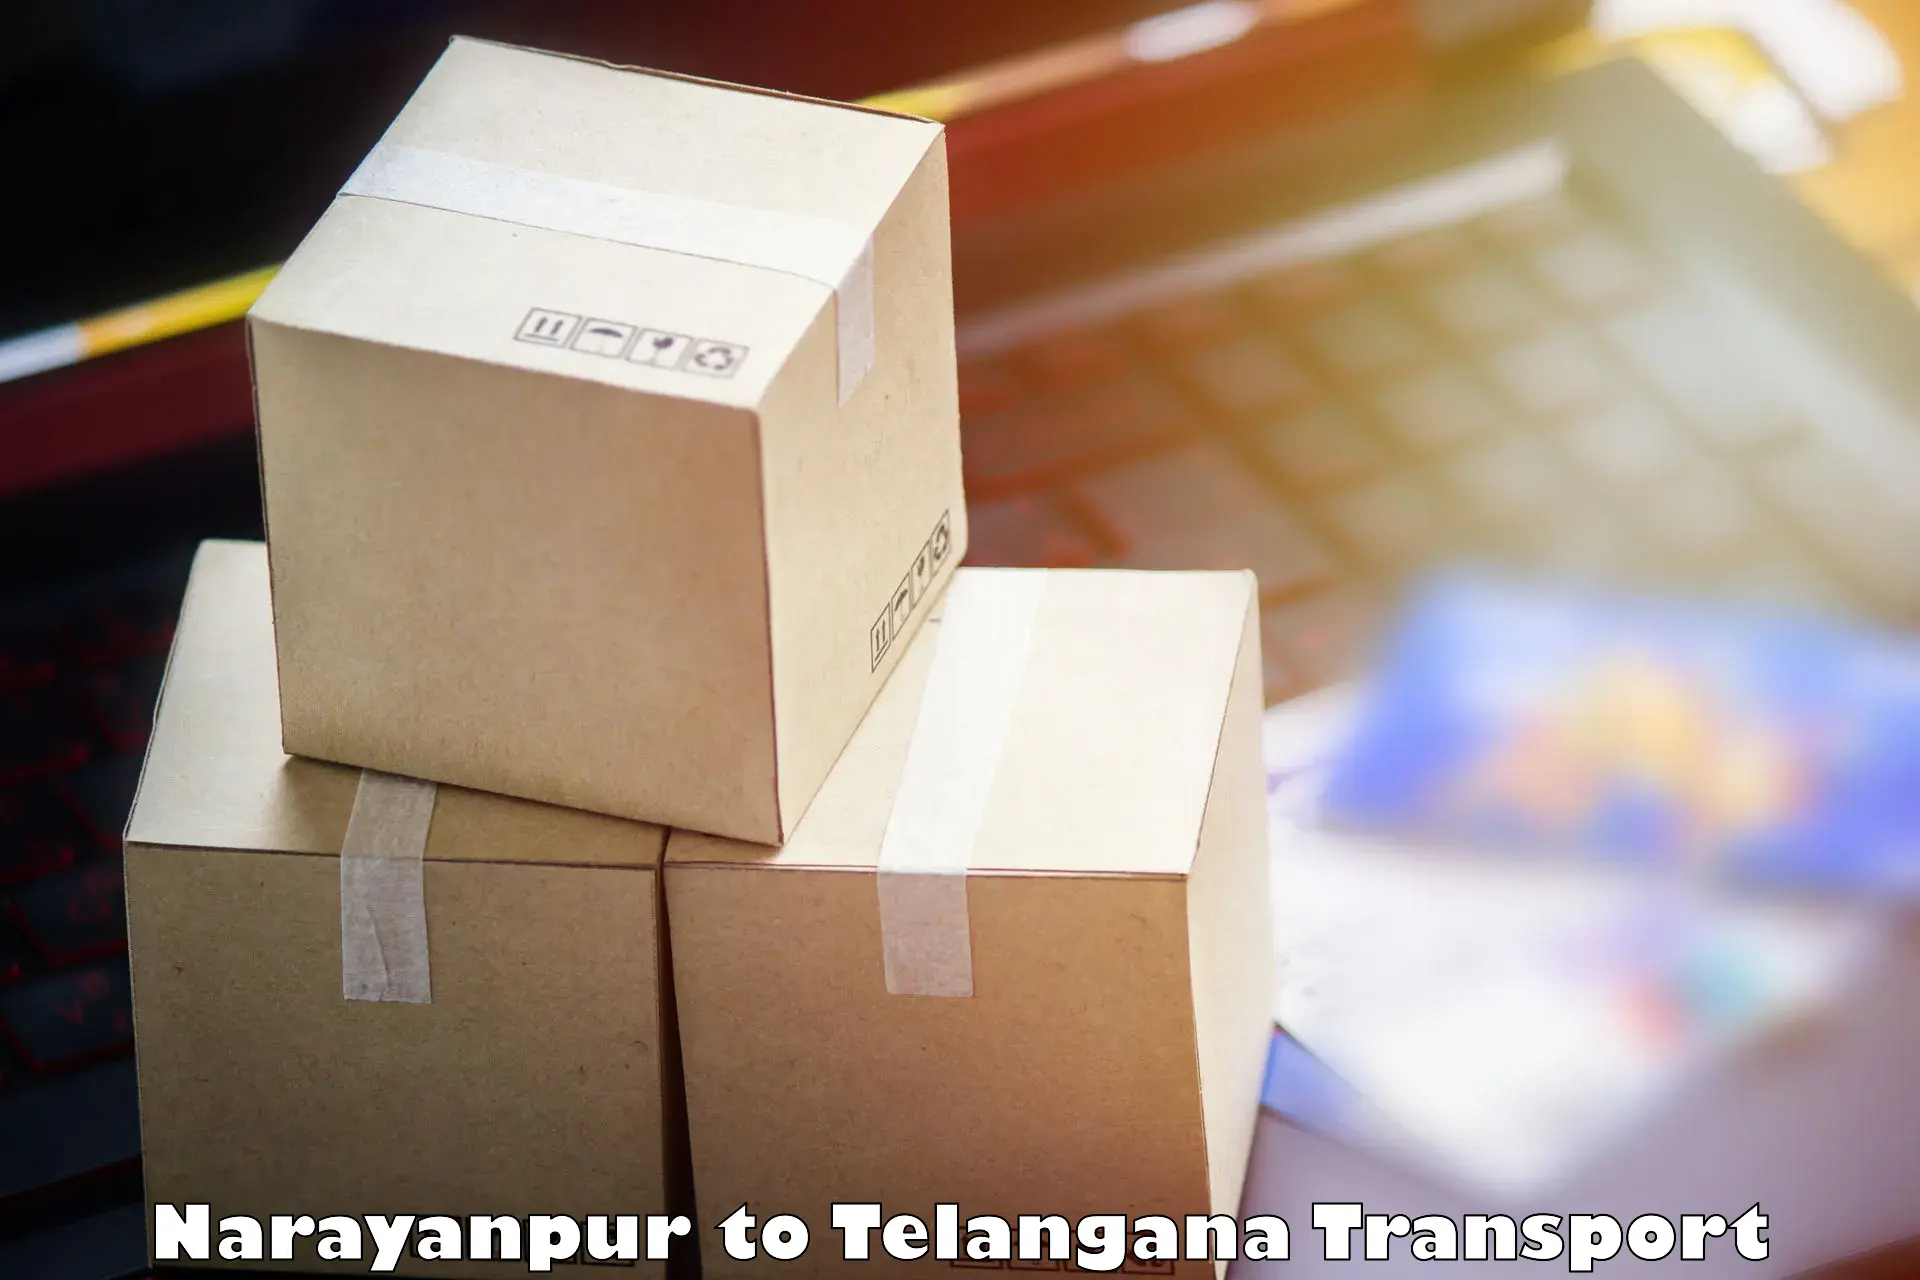 Shipping partner Narayanpur to Telangana